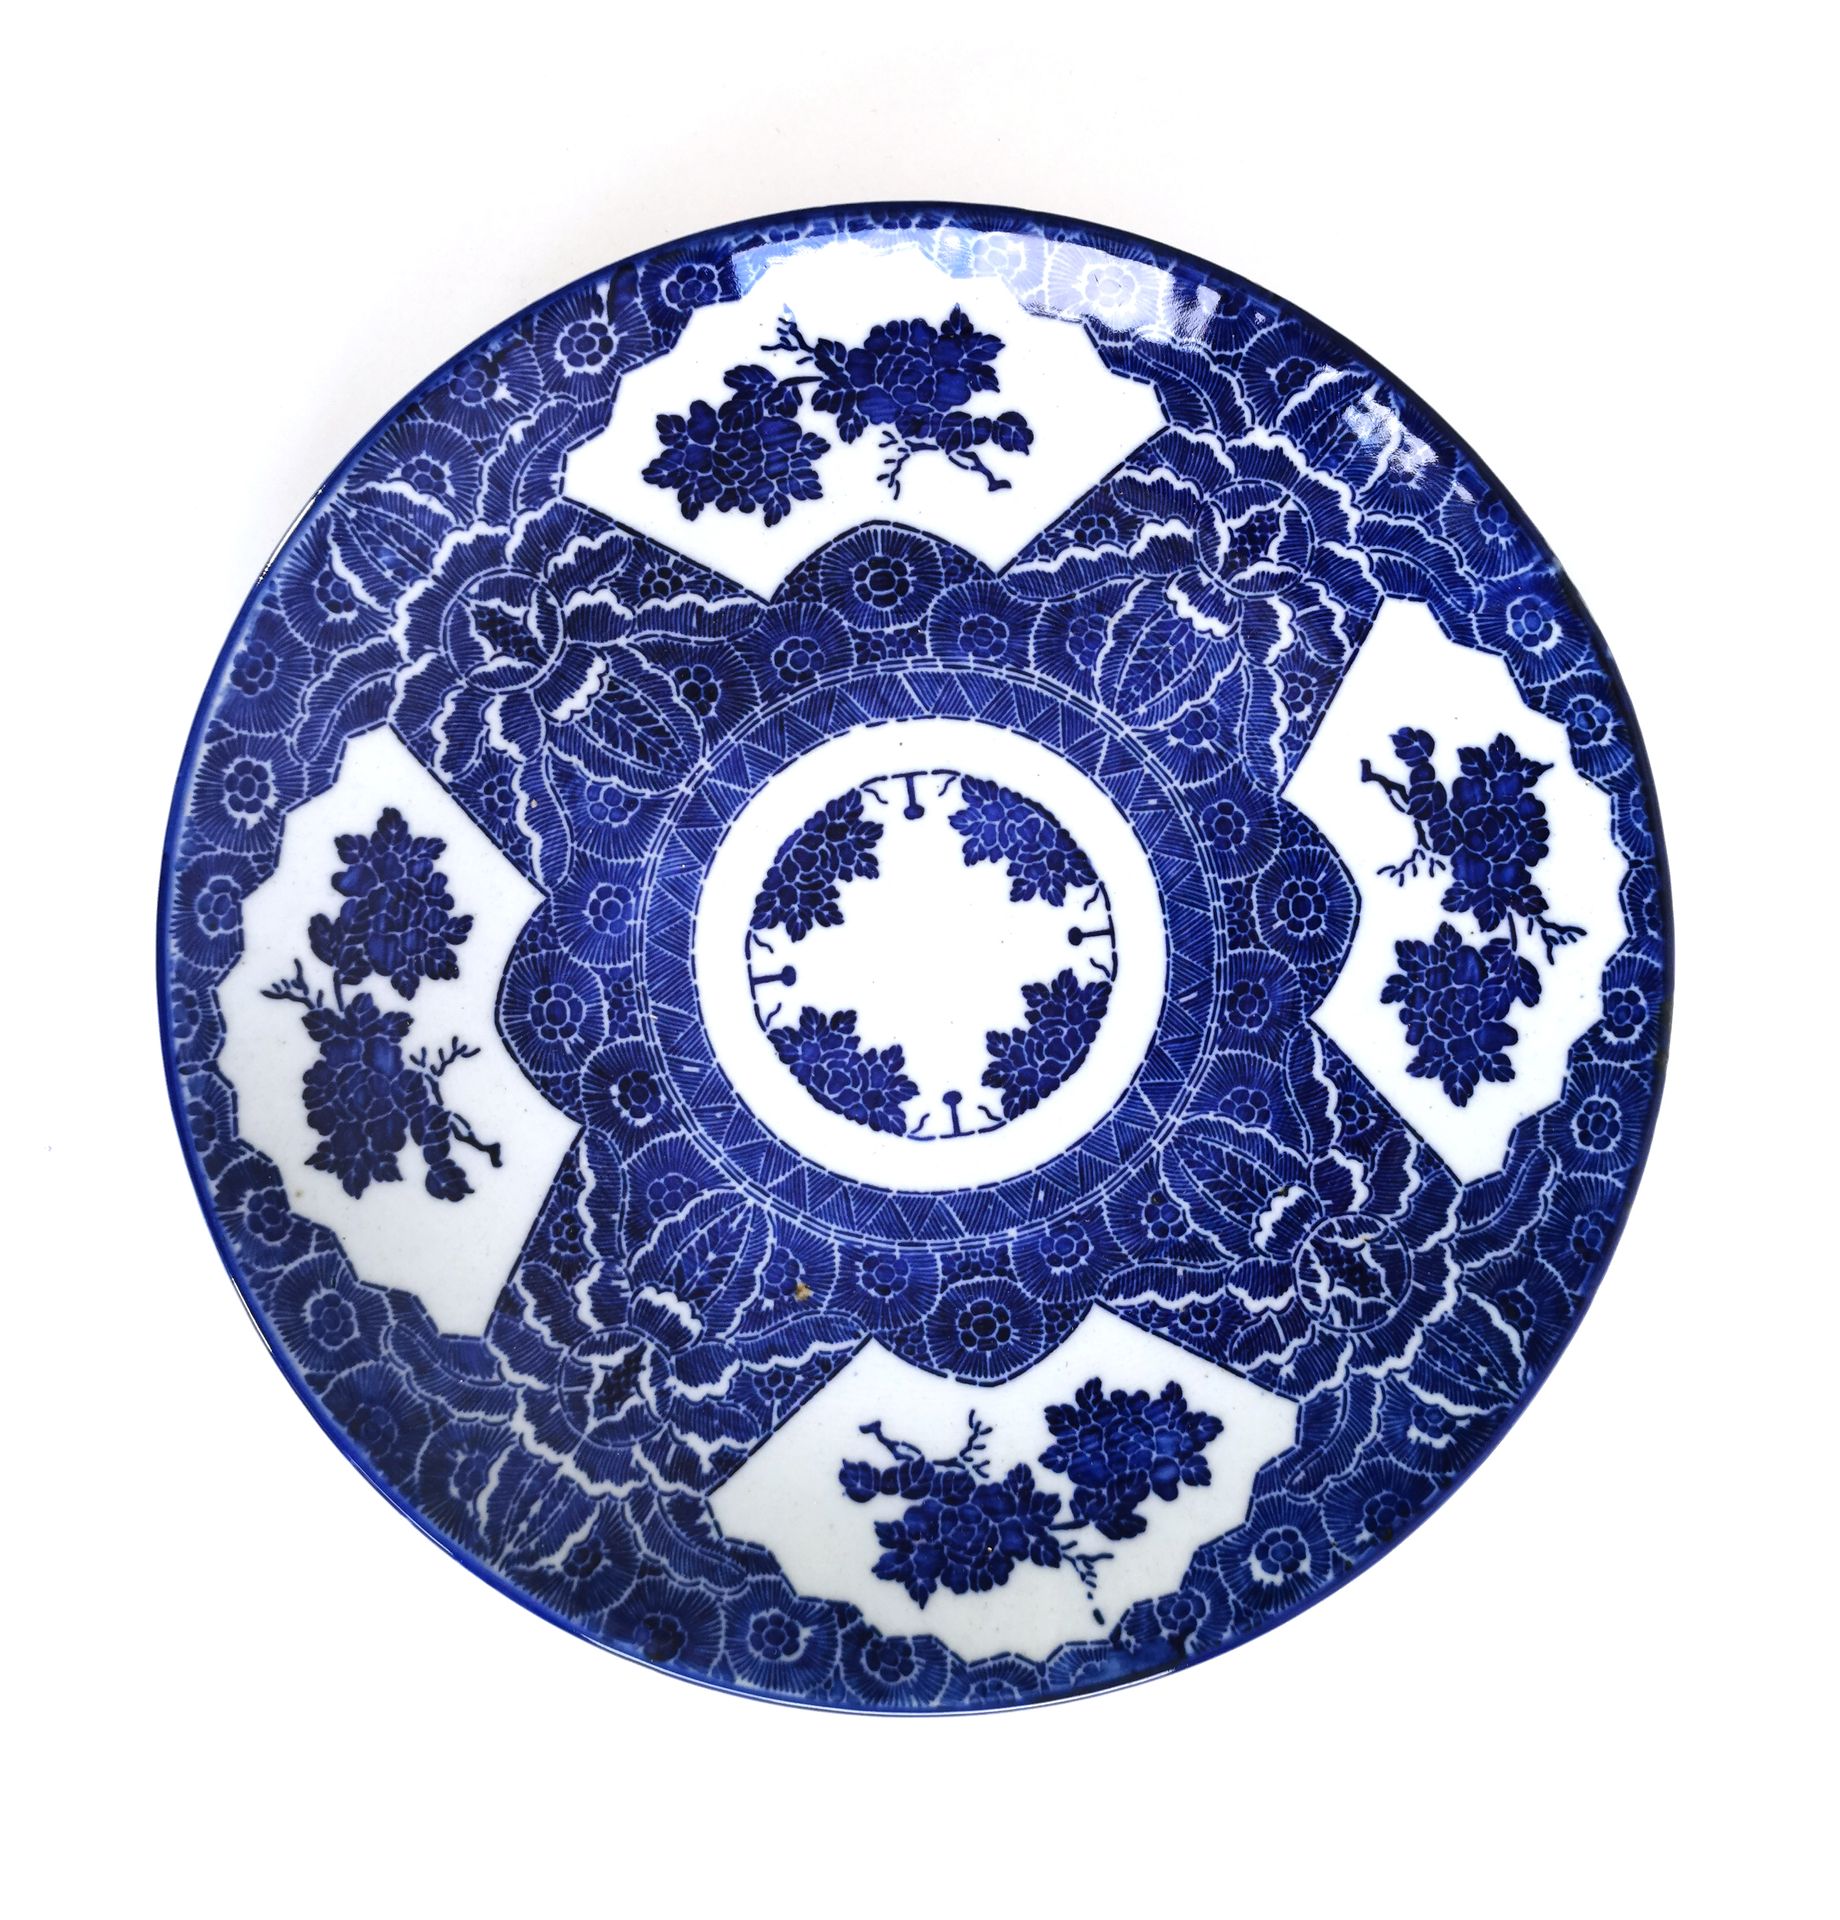 Null 日本 20世纪

瓷盘，青花纹饰，花束背景上有扇形的花枝图案

直径34.5厘米